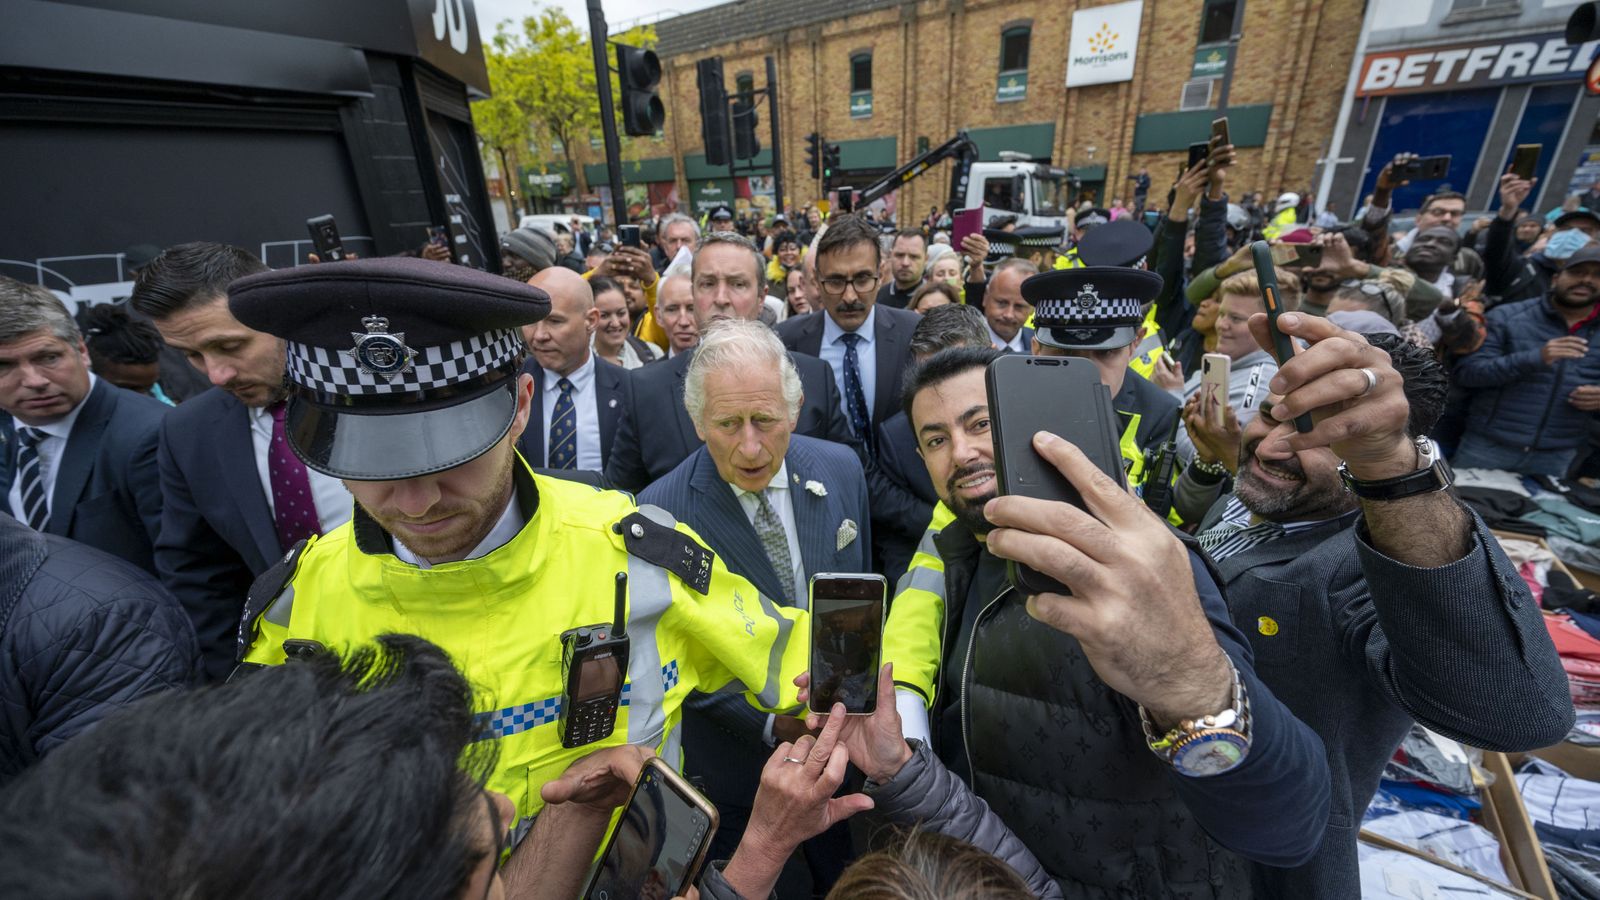 حشد في الشارع عندما يلتقي الأمير تشارلز بشباب حصلوا على وظائف من خلال جمعيته الخيرية |  أخبار المملكة المتحدة